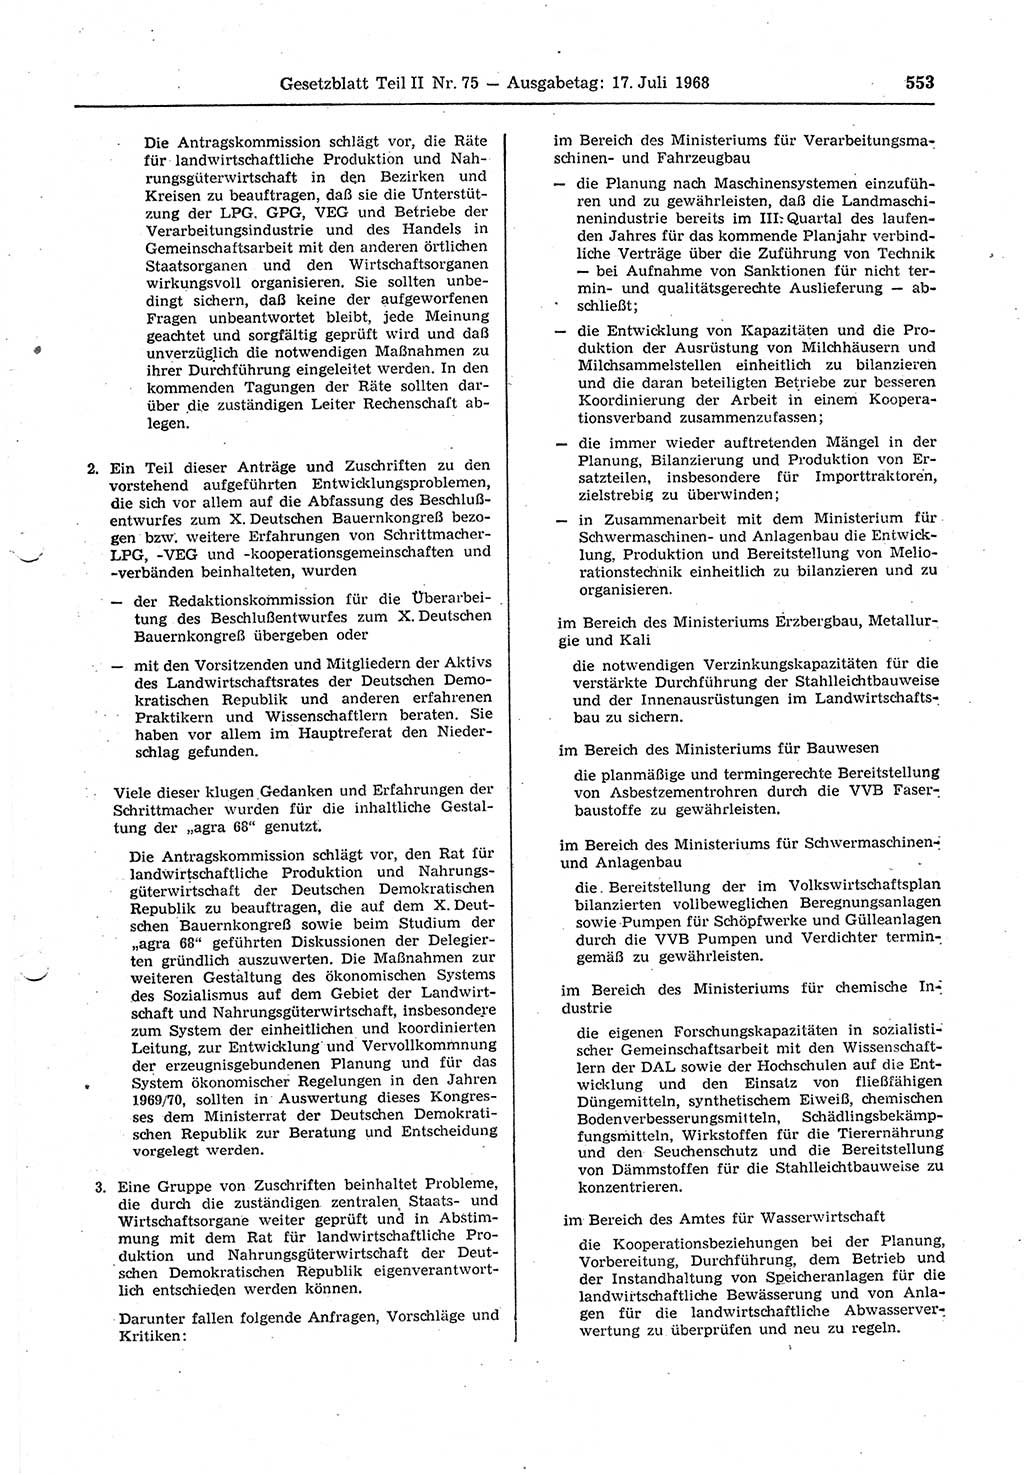 Gesetzblatt (GBl.) der Deutschen Demokratischen Republik (DDR) Teil ⅠⅠ 1968, Seite 553 (GBl. DDR ⅠⅠ 1968, S. 553)